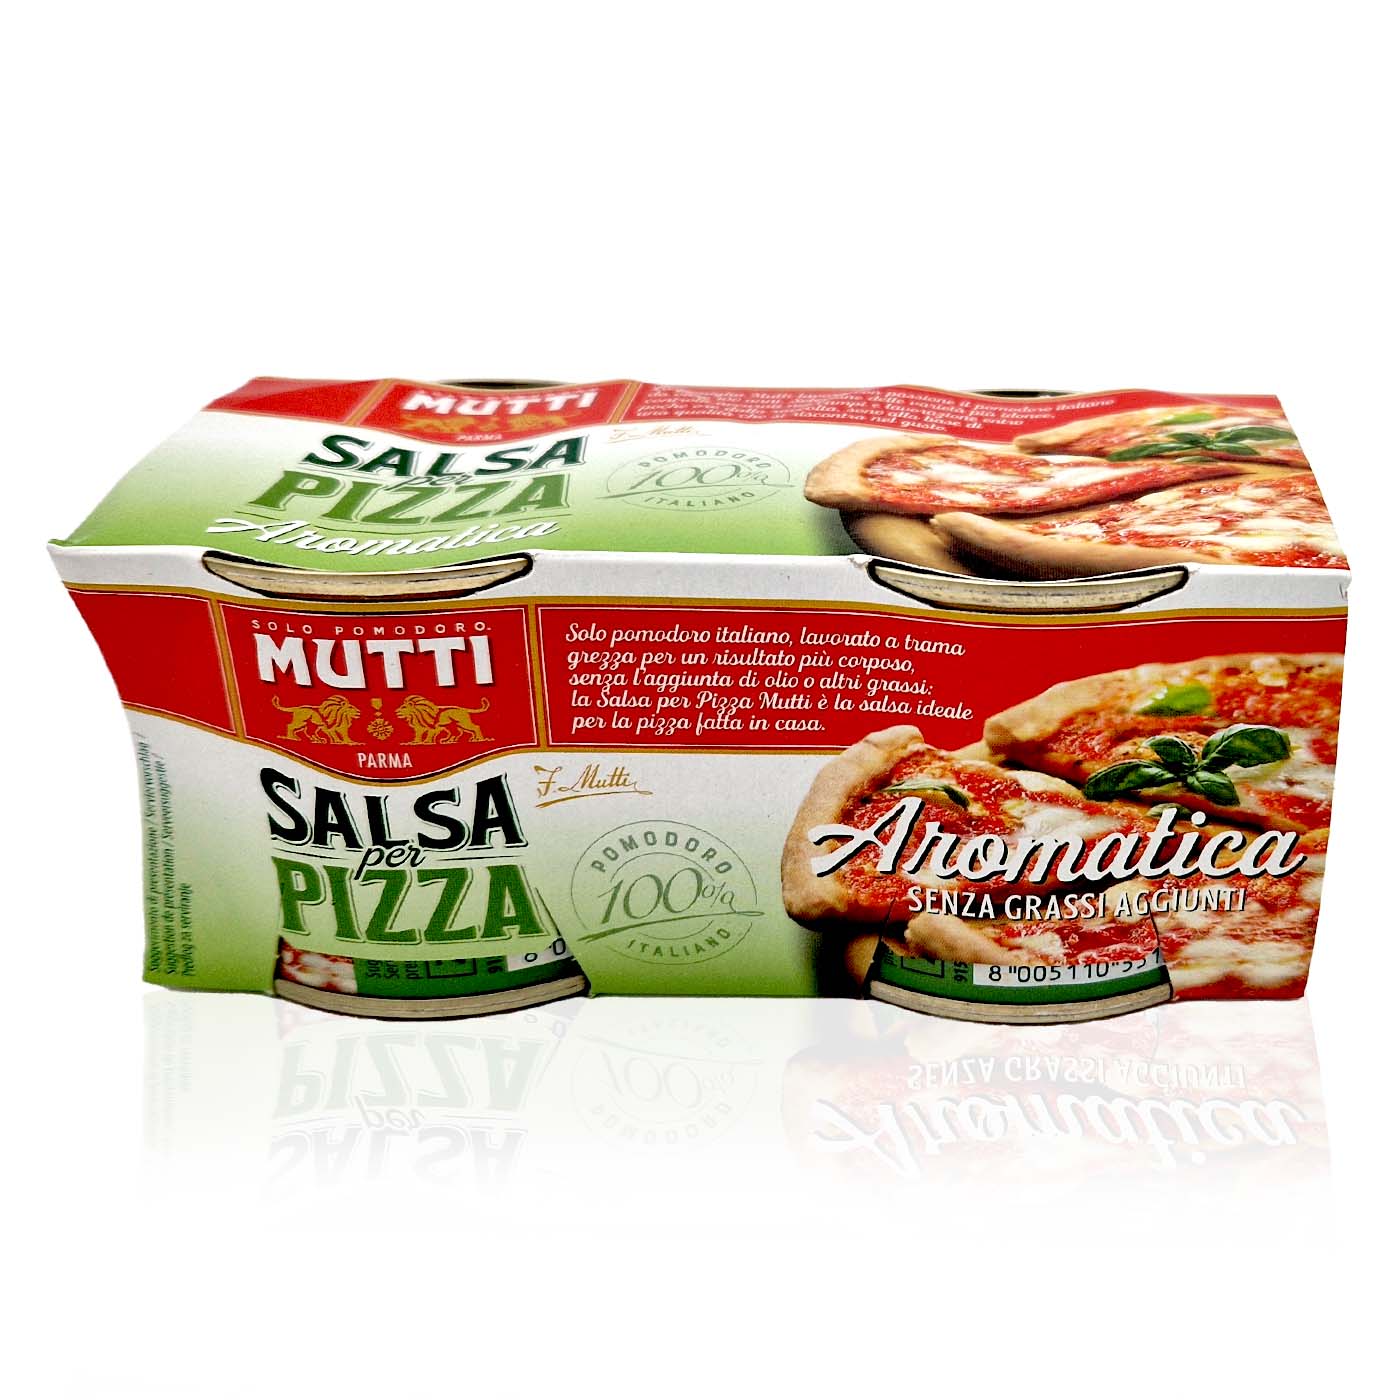 MUTTI Salsa per Pizza - Pizzasoße - 2x 0,21kg - italienisch - einkaufen.de